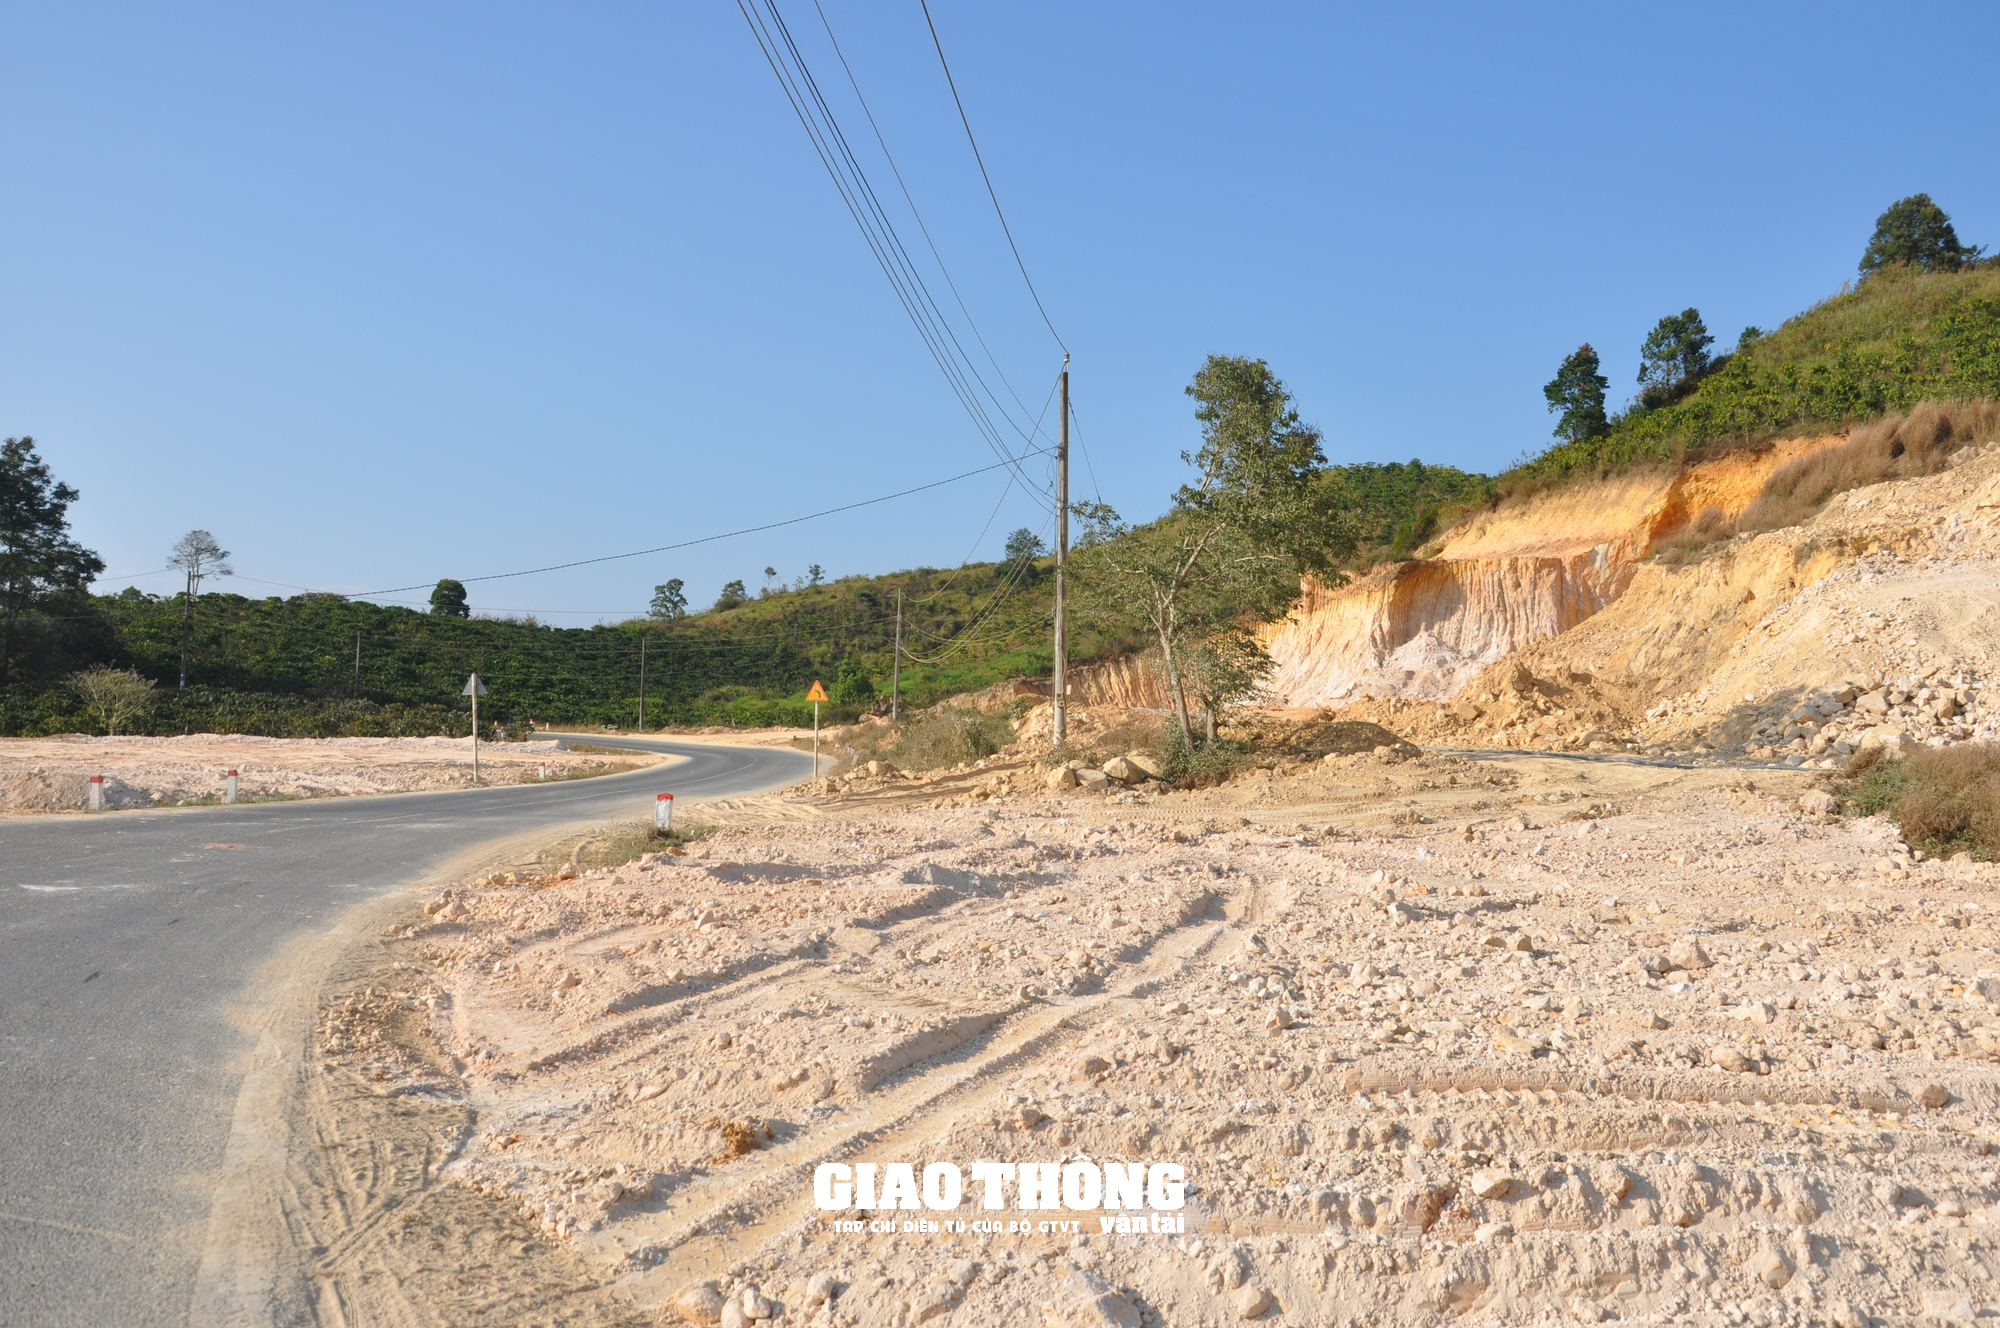 Nhức nhối nạn đào, san lấp mặt bằng xâm phạm hành lang tuyến QL27, ĐT724 ở Lâm Đồng - Ảnh 6.